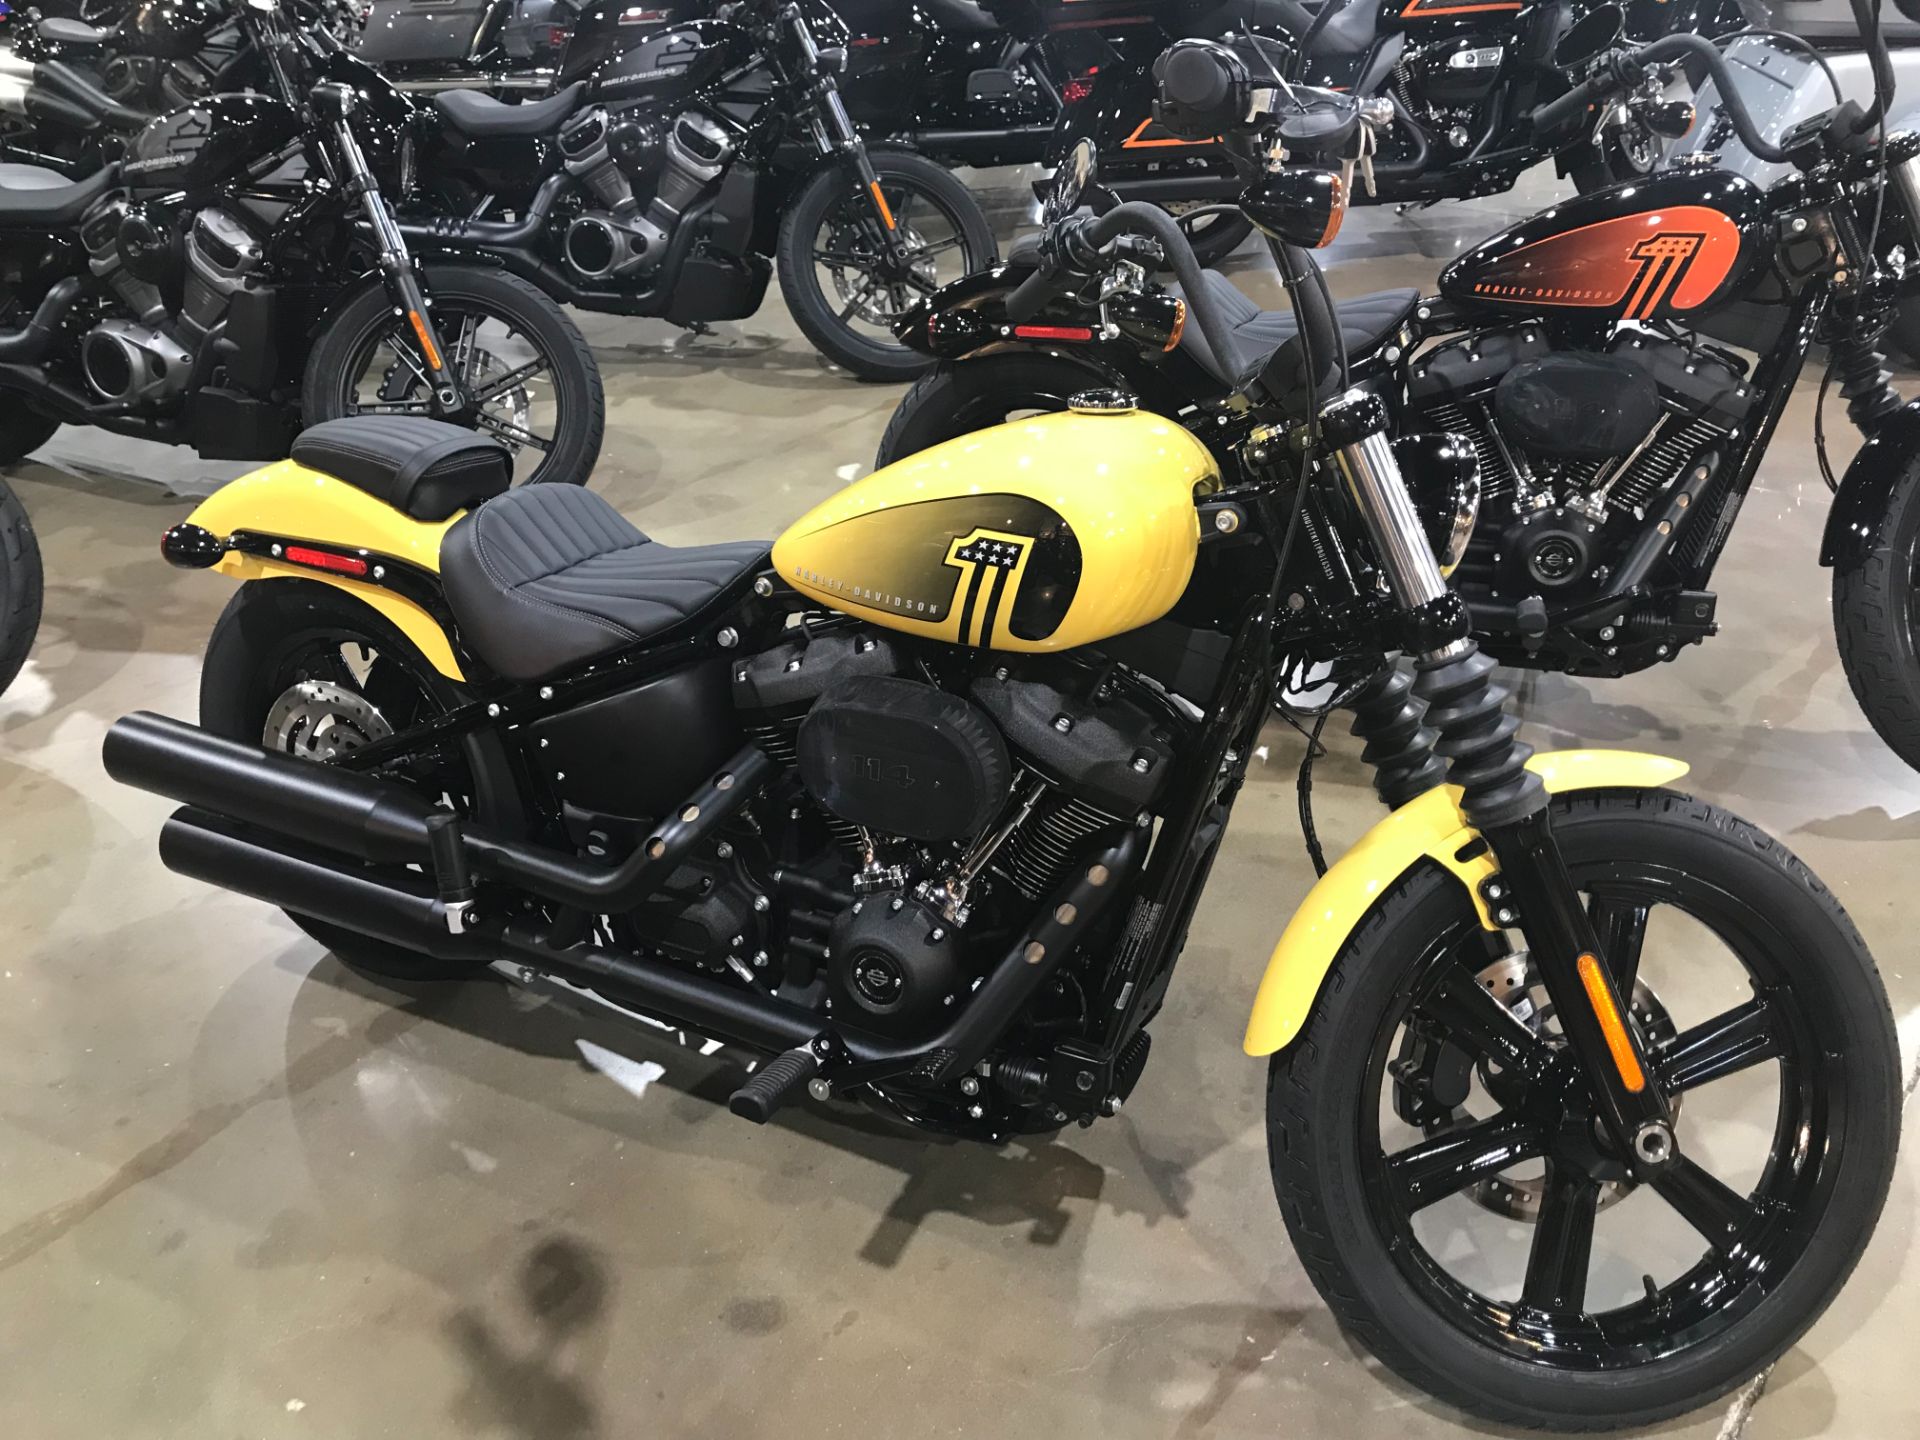 2023 Harley-Davidson Street Bob® 114 in Kingwood, Texas - Photo 1